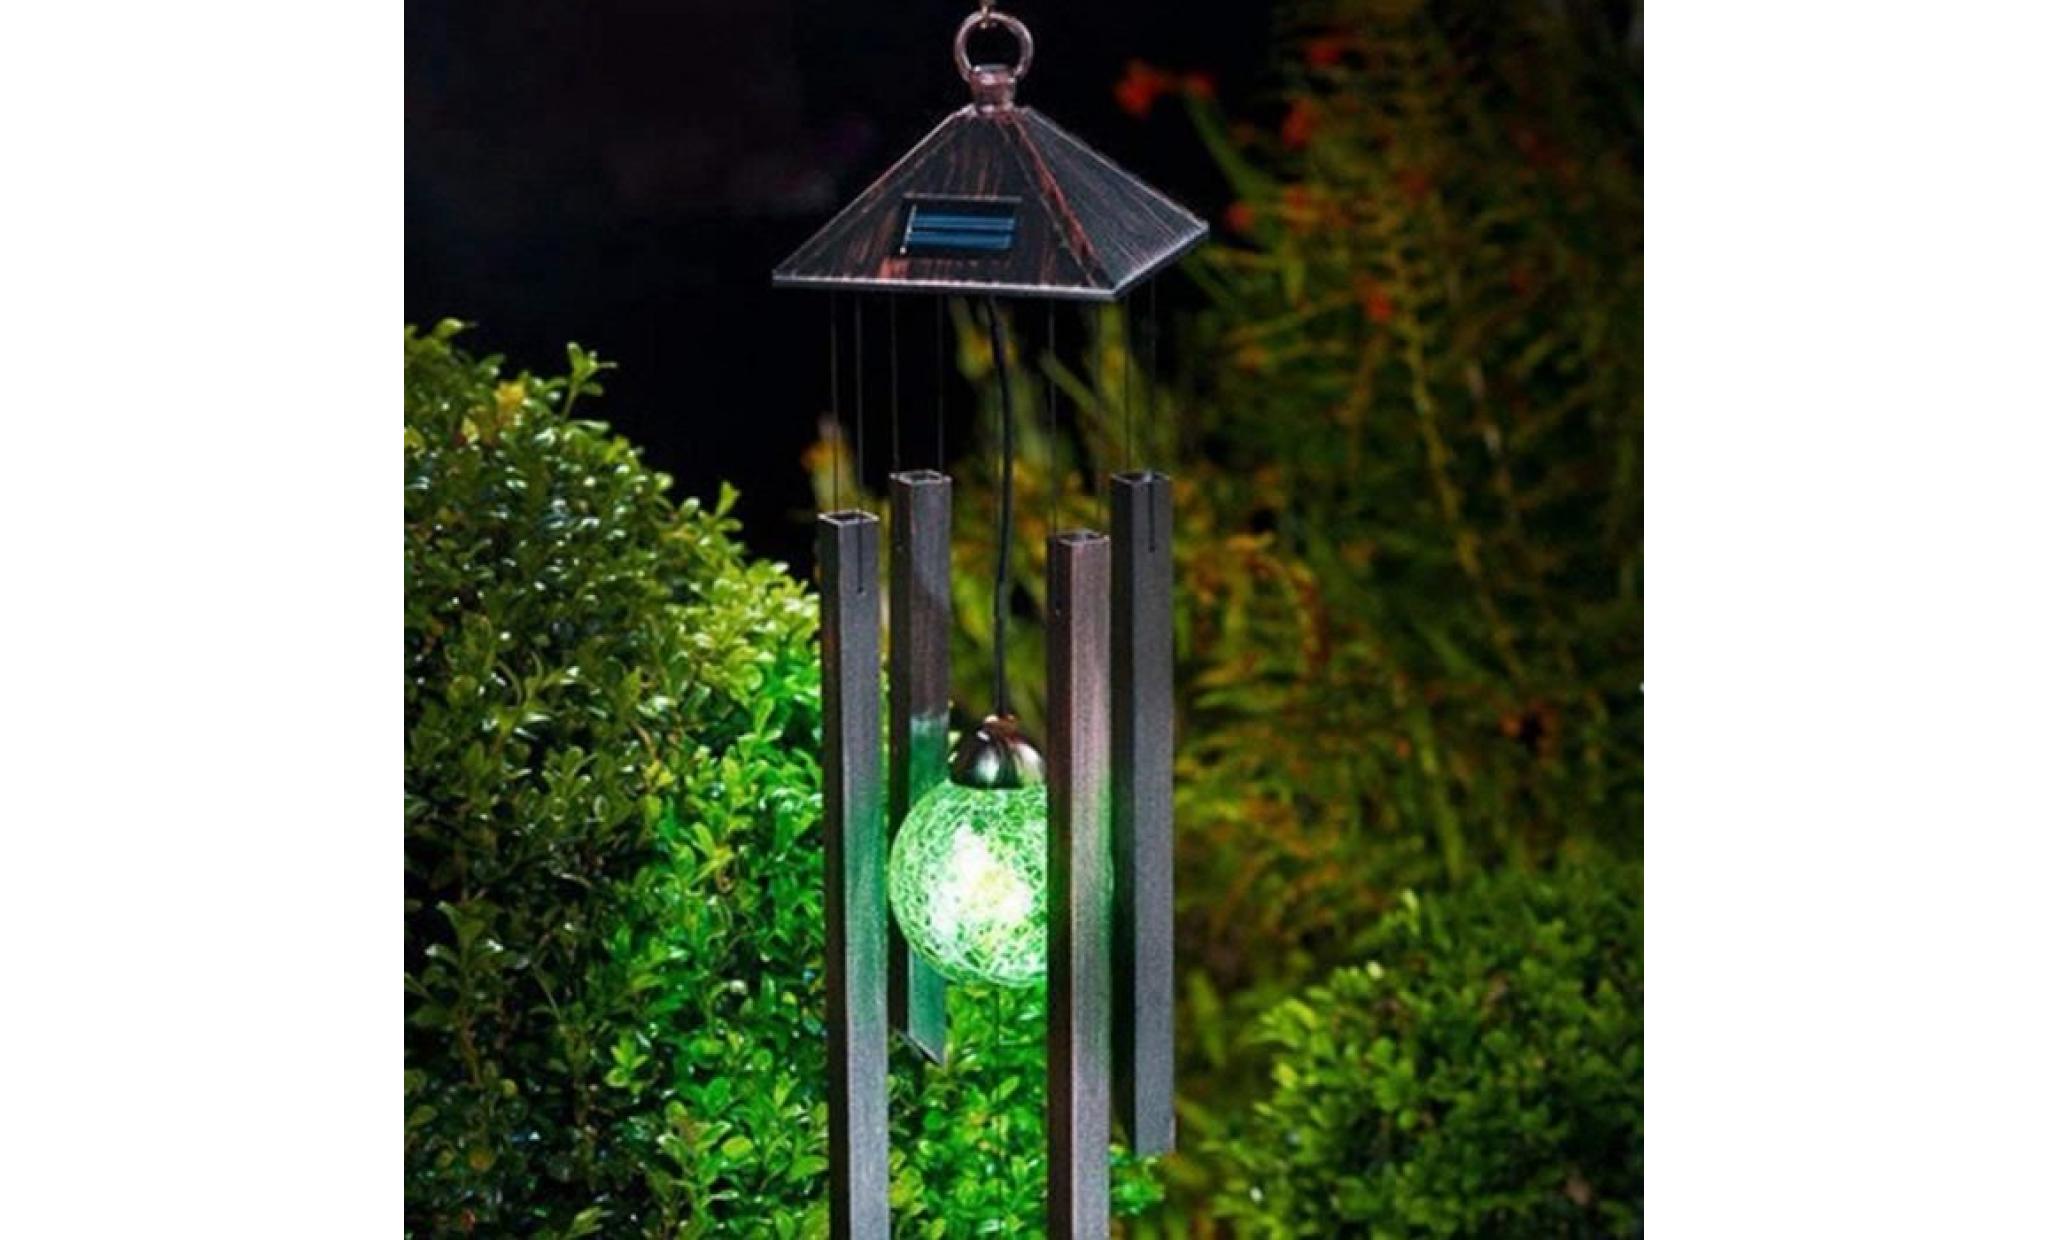 changement de couleur de la lumière solaire du carillon éolien led décoration de jardin carillon éolien lzx80807731_381 pas cher